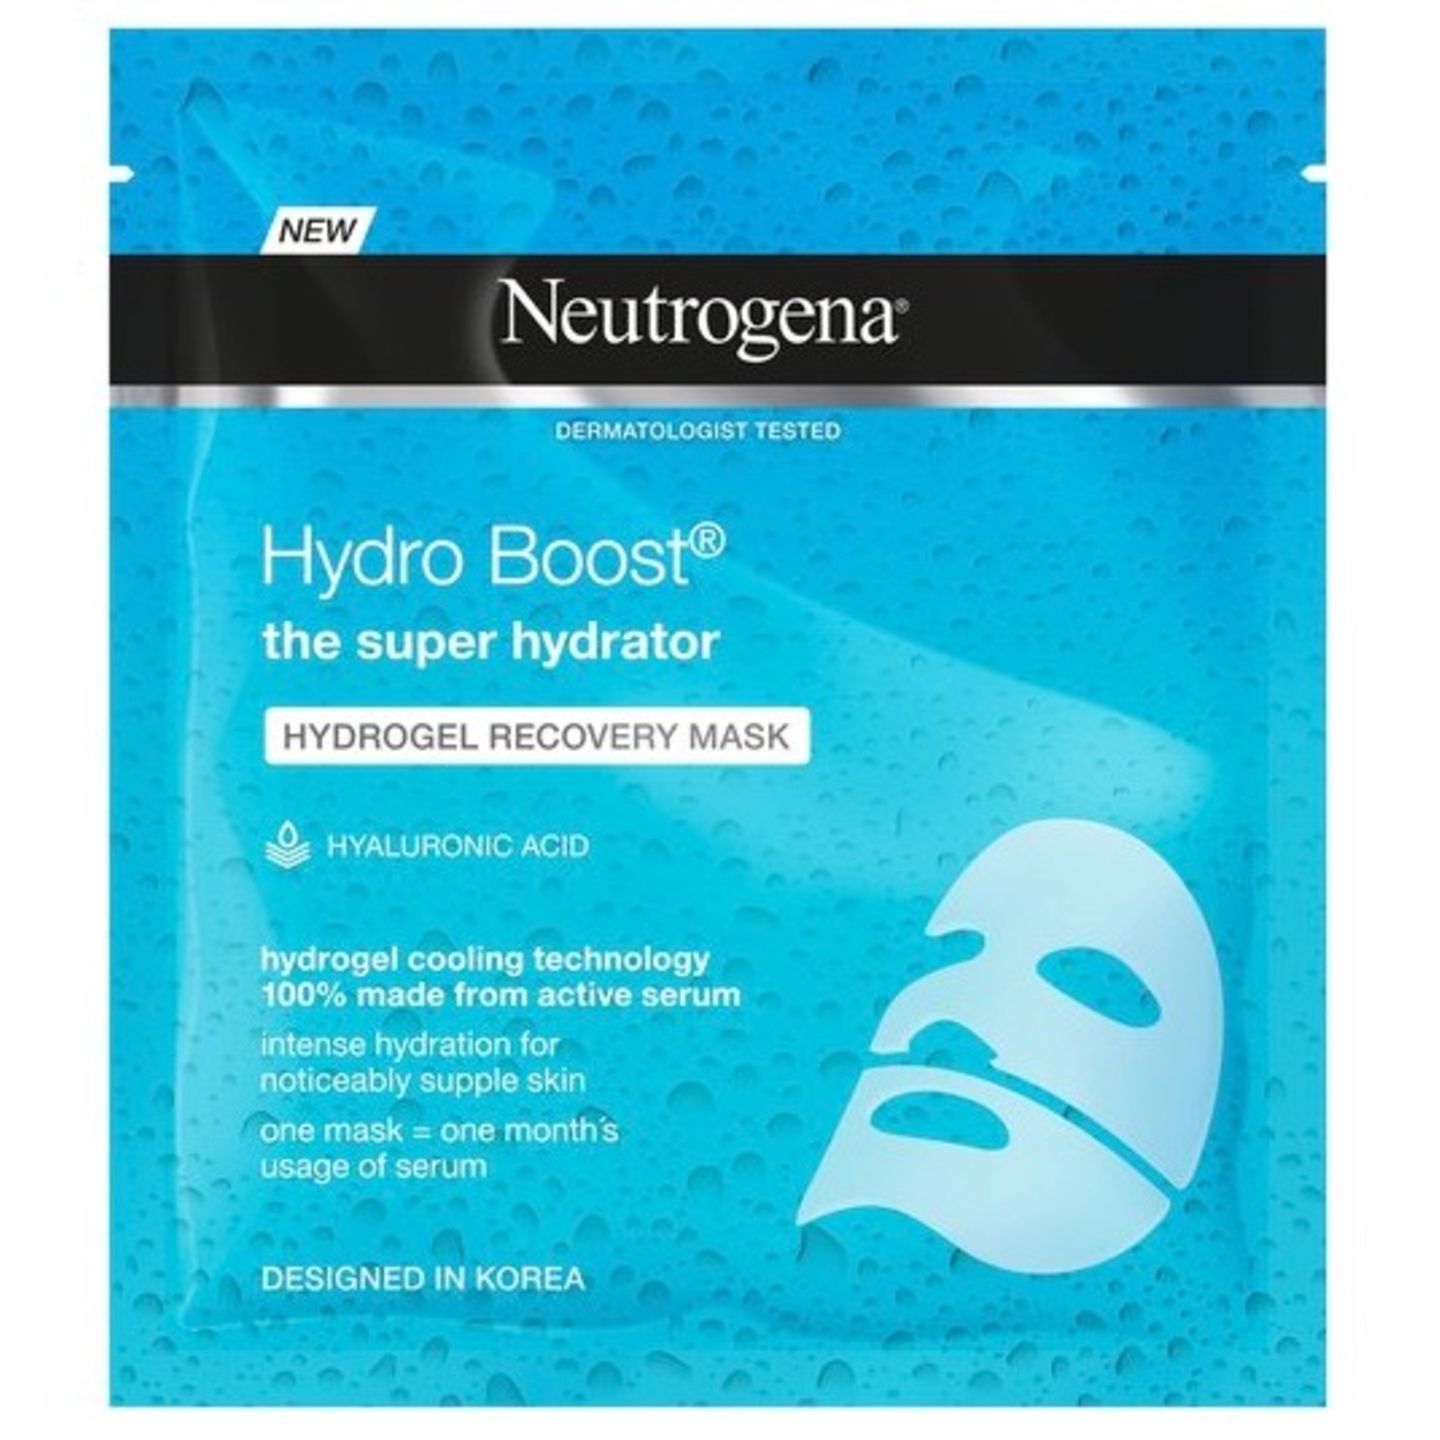 Das Produkt: Die feuchtigkeitsspendende Hydro Boost Hydrogel-Maske von Neutrogena besteht zu 100% aus Hydrogel mit Hyaluronsäure. Es ist eine zweiteilige Gelmaske (rund 3 Euro bei dm).  Was verspricht das Produkt? Eine intensive Erholung und eine geschmeidigere, erfrischte und glatte Haut. Sie soll sofort kühlen und nicht austrocknen. Außerdem soll die Maske durch die zwei Teile eine perfekte Passform haben.  Wie ließ sich das Produkt anwenden? Die zwei Teile der Maske haben es besonders einfach gemacht, diese aufzutragen. Das Gel-Material, anstelle vom normalen Tuch-Stoff, war sehr robust. Dadurch war die Maske einfach aufzutragen und ist nicht eingerissen. Dass sie aus zwei Teilen besteht, war ein zusätzlicher Vorteil. Sie hat sich perfekt meinen Konturen angepasst und ist nicht verrutscht. Nach dem Auftragen 20-30 Minuten einwirken lassen, abziehen und das überschüssige Serum einmassieren.  Wie war das Ergebnis? Die Maske hält, was sie verspricht. Meine Haut fühlt sich erfrischt an, die Maske hat viel Feuchtigkeit abgegeben, die auch noch am nächsten Tag anhält. Die Maske kühlt angenehm und wirkt sehr entspannend.  Wer eine extra Portion Feuchtigkeit und eine einfache Handhabung sucht, liegt mit dieser Maske genau richtig.  Lilly, Praktikantin